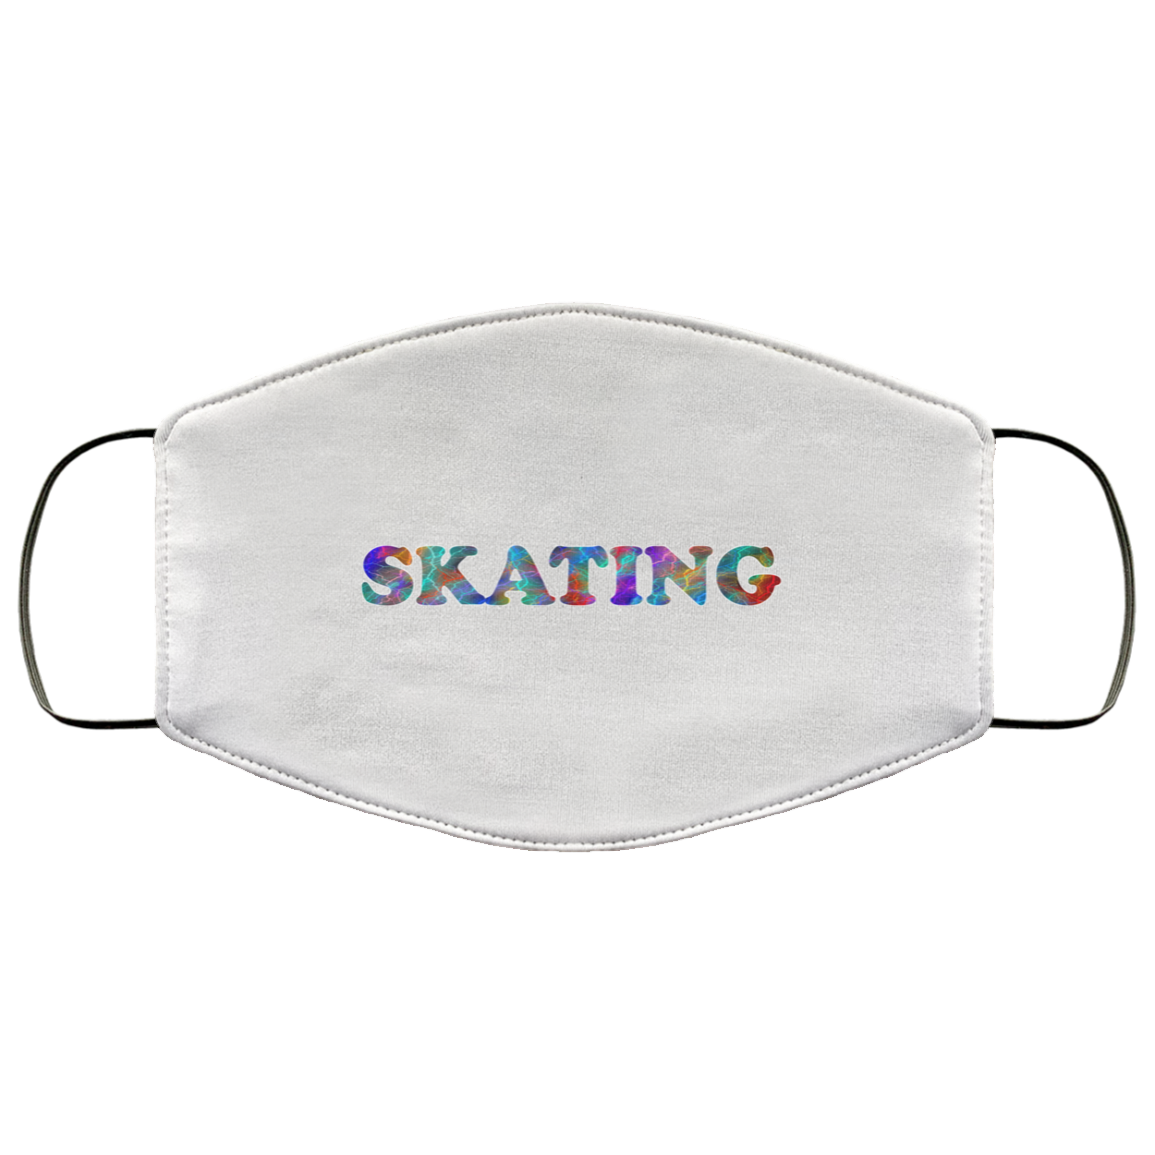 Skating 2 Layer Protective Mask